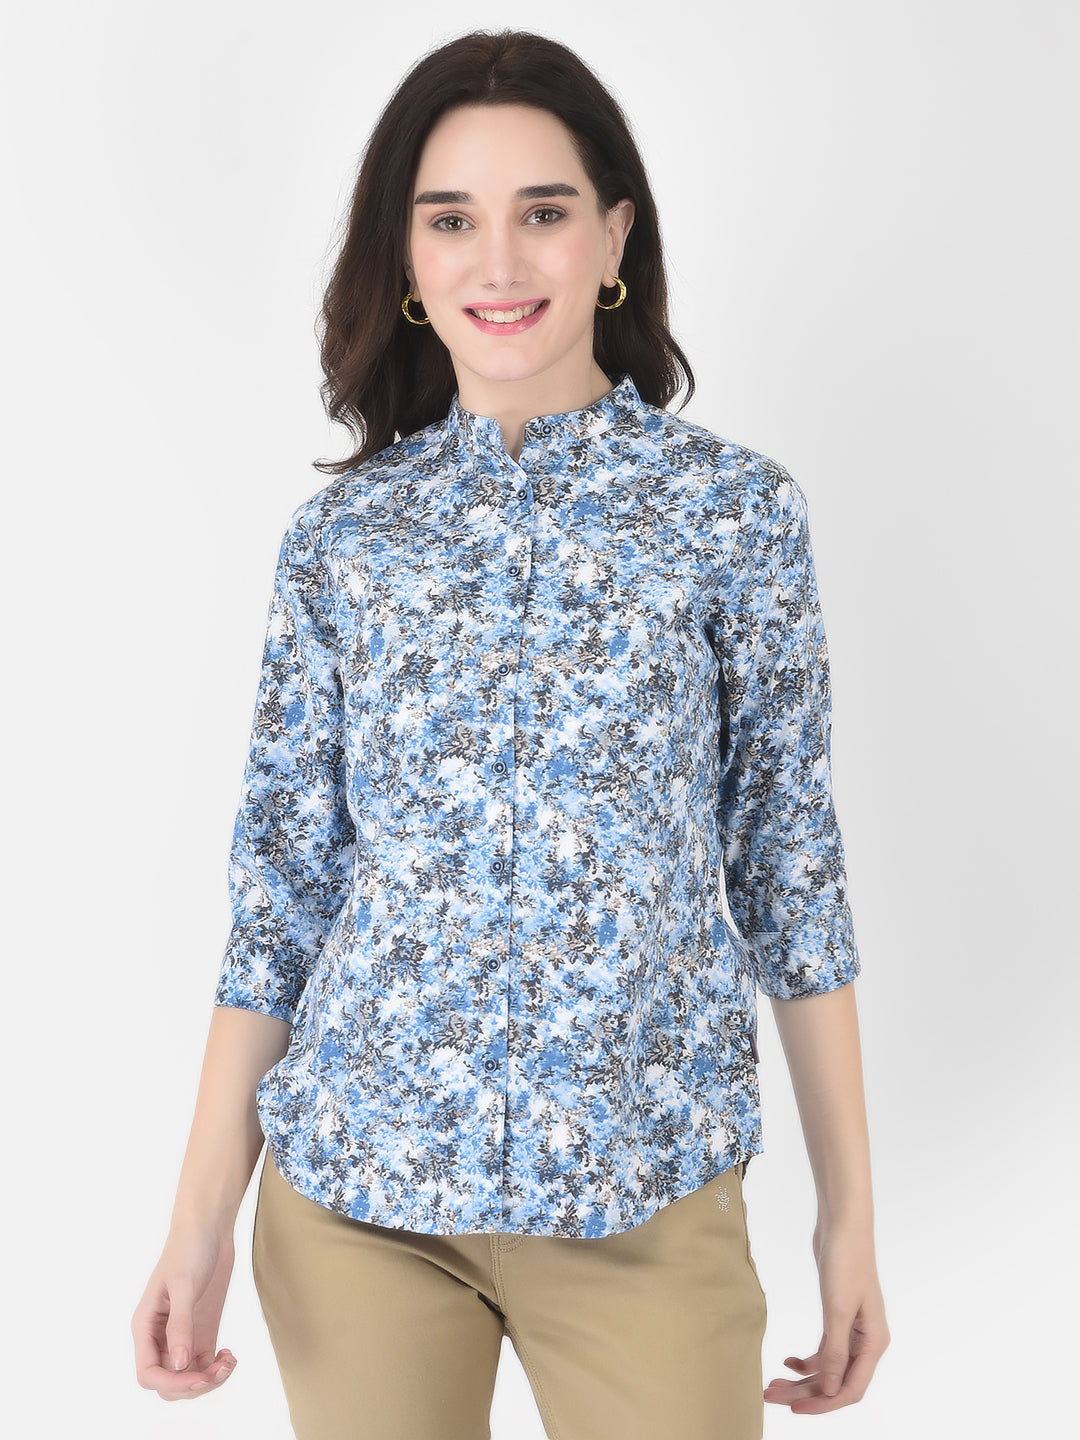 Blue Floral Shirt - Women Shirts